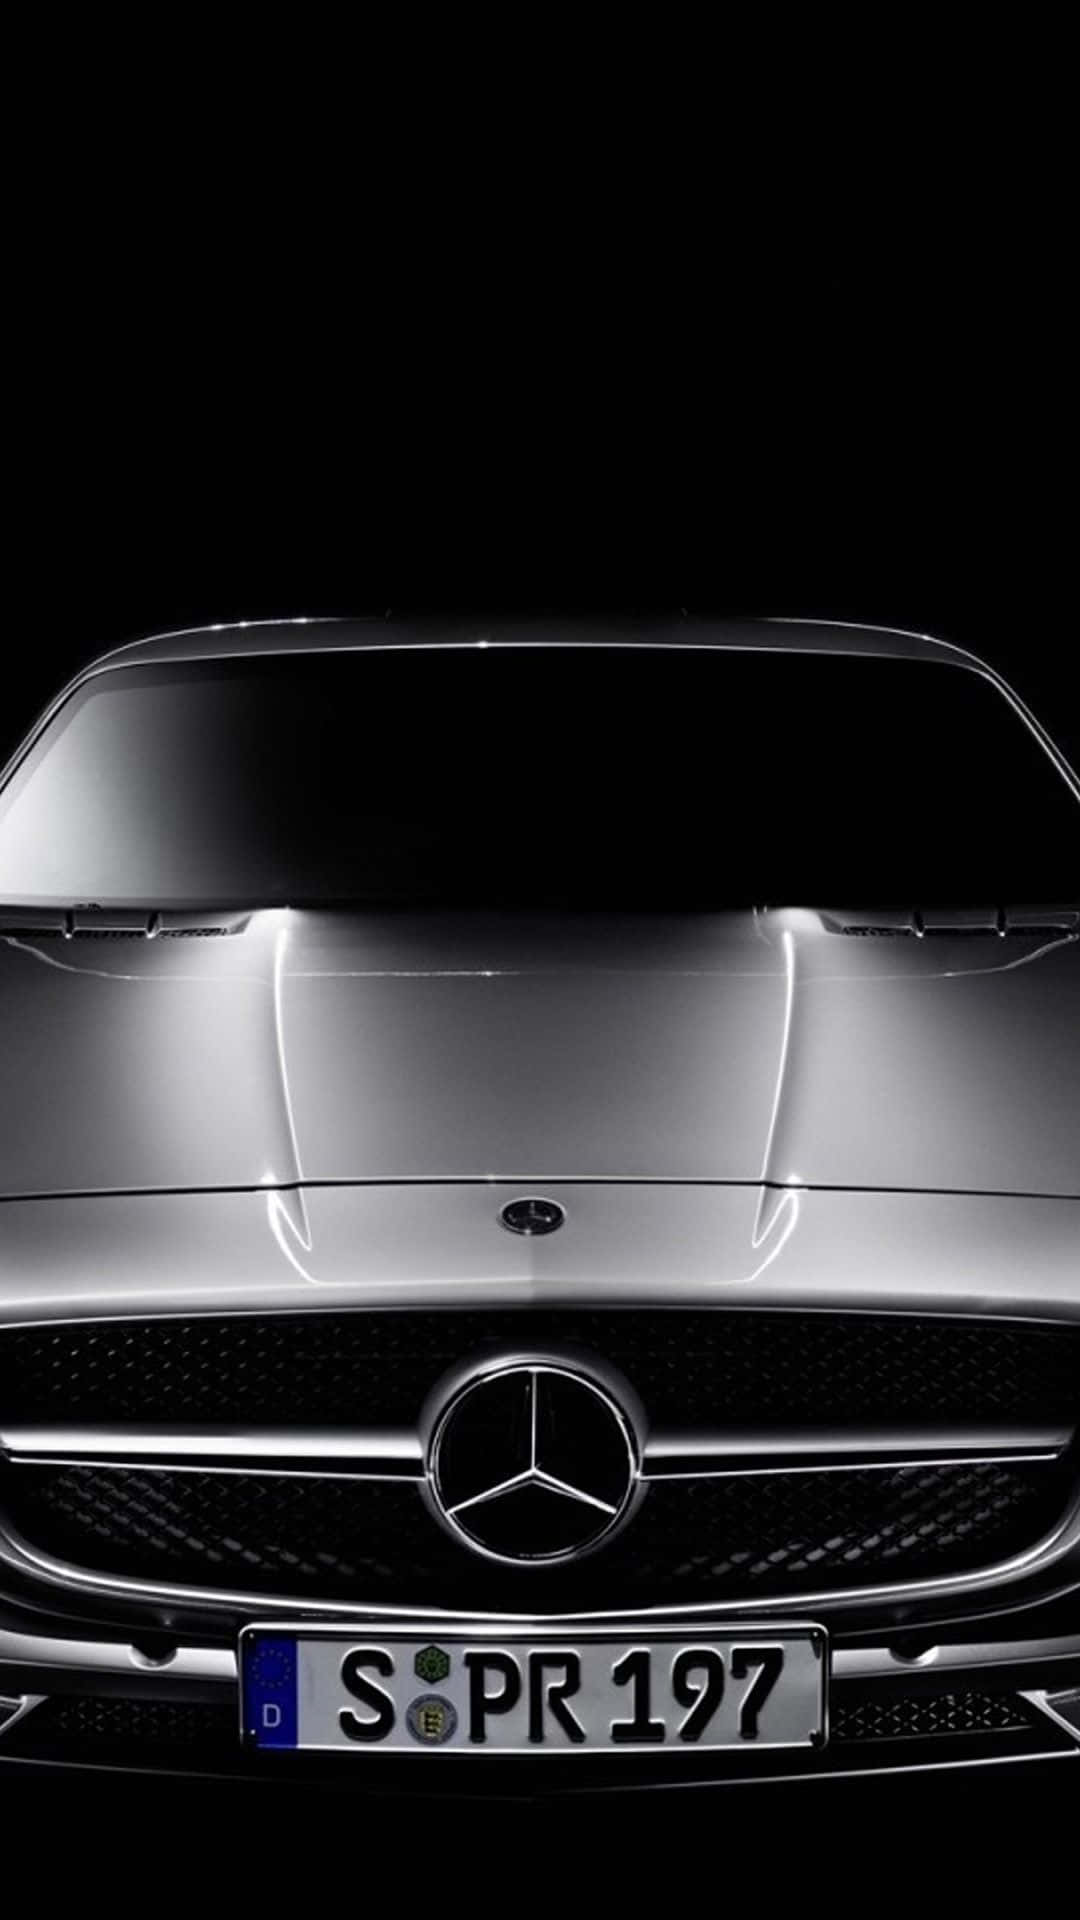 Vis din stil med Mercedes Benz iPhone tapet. Wallpaper